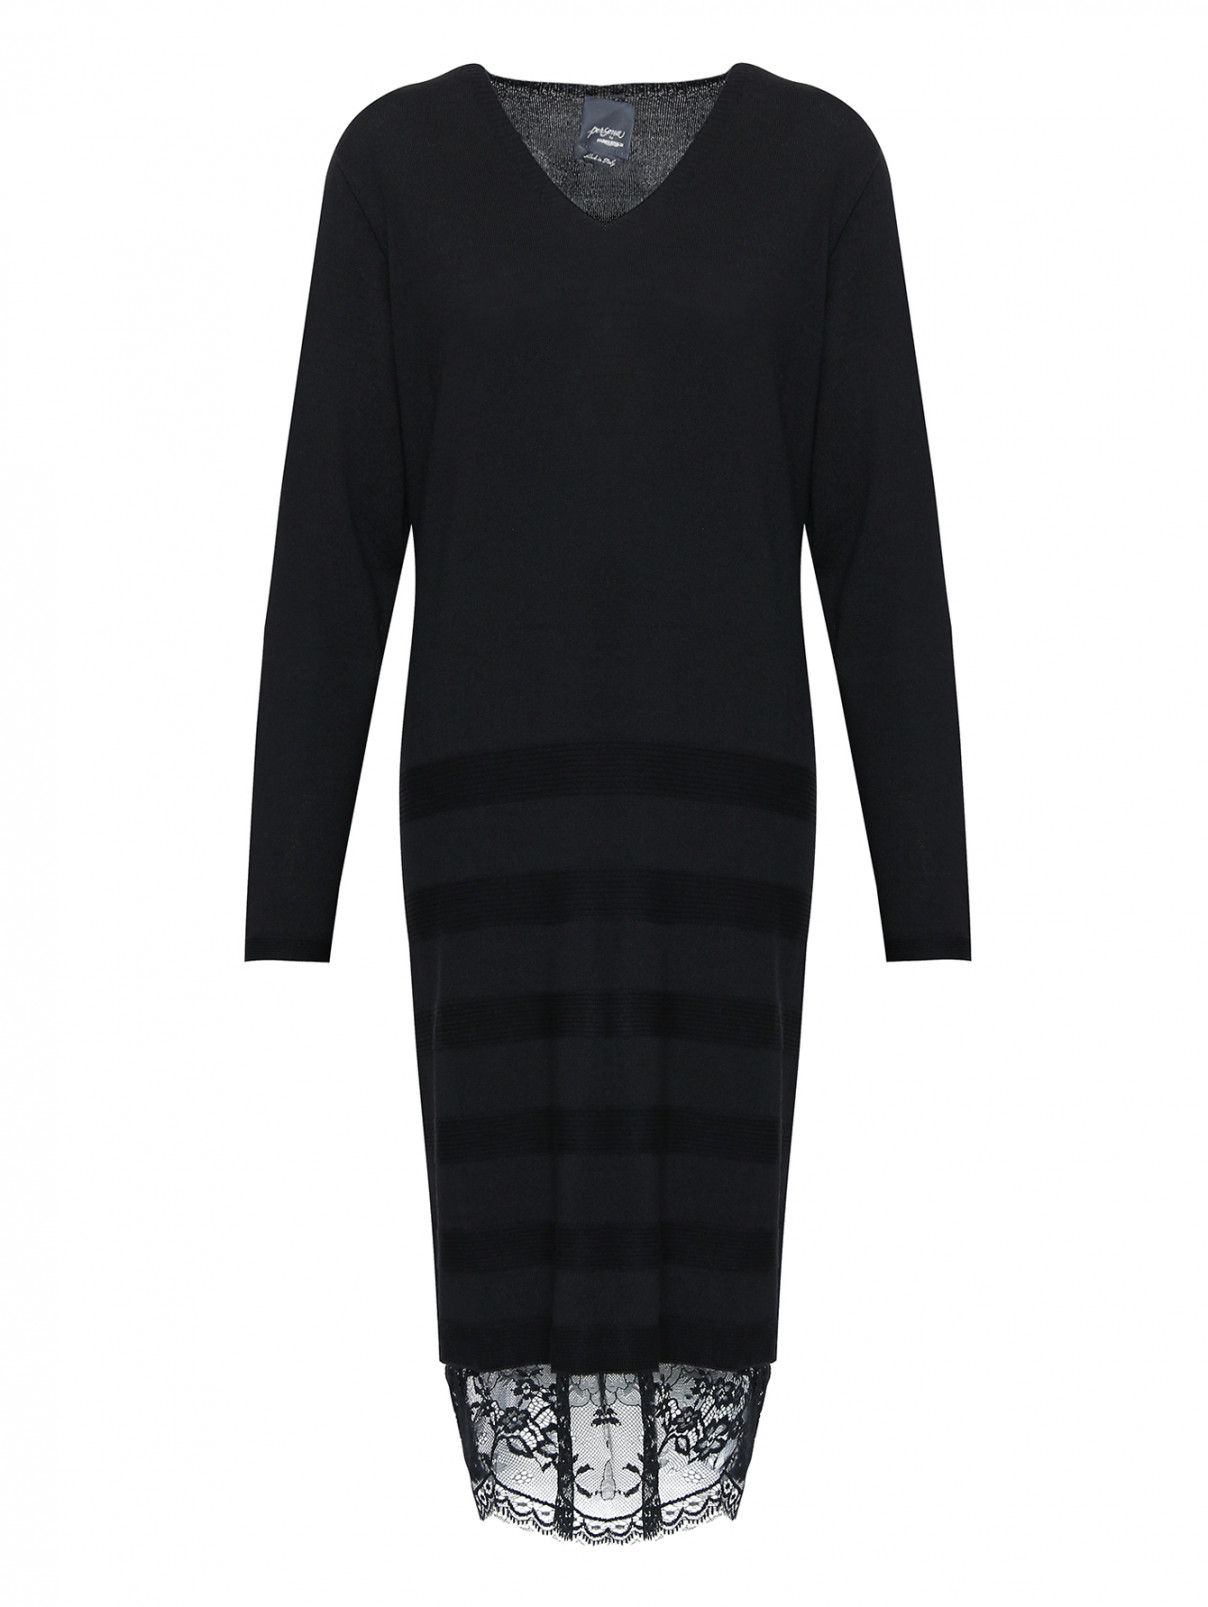 Платье из шерсти, прямого кроя, с отделкой кружевом Persona by Marina Rinaldi  –  Общий вид  – Цвет:  Черный